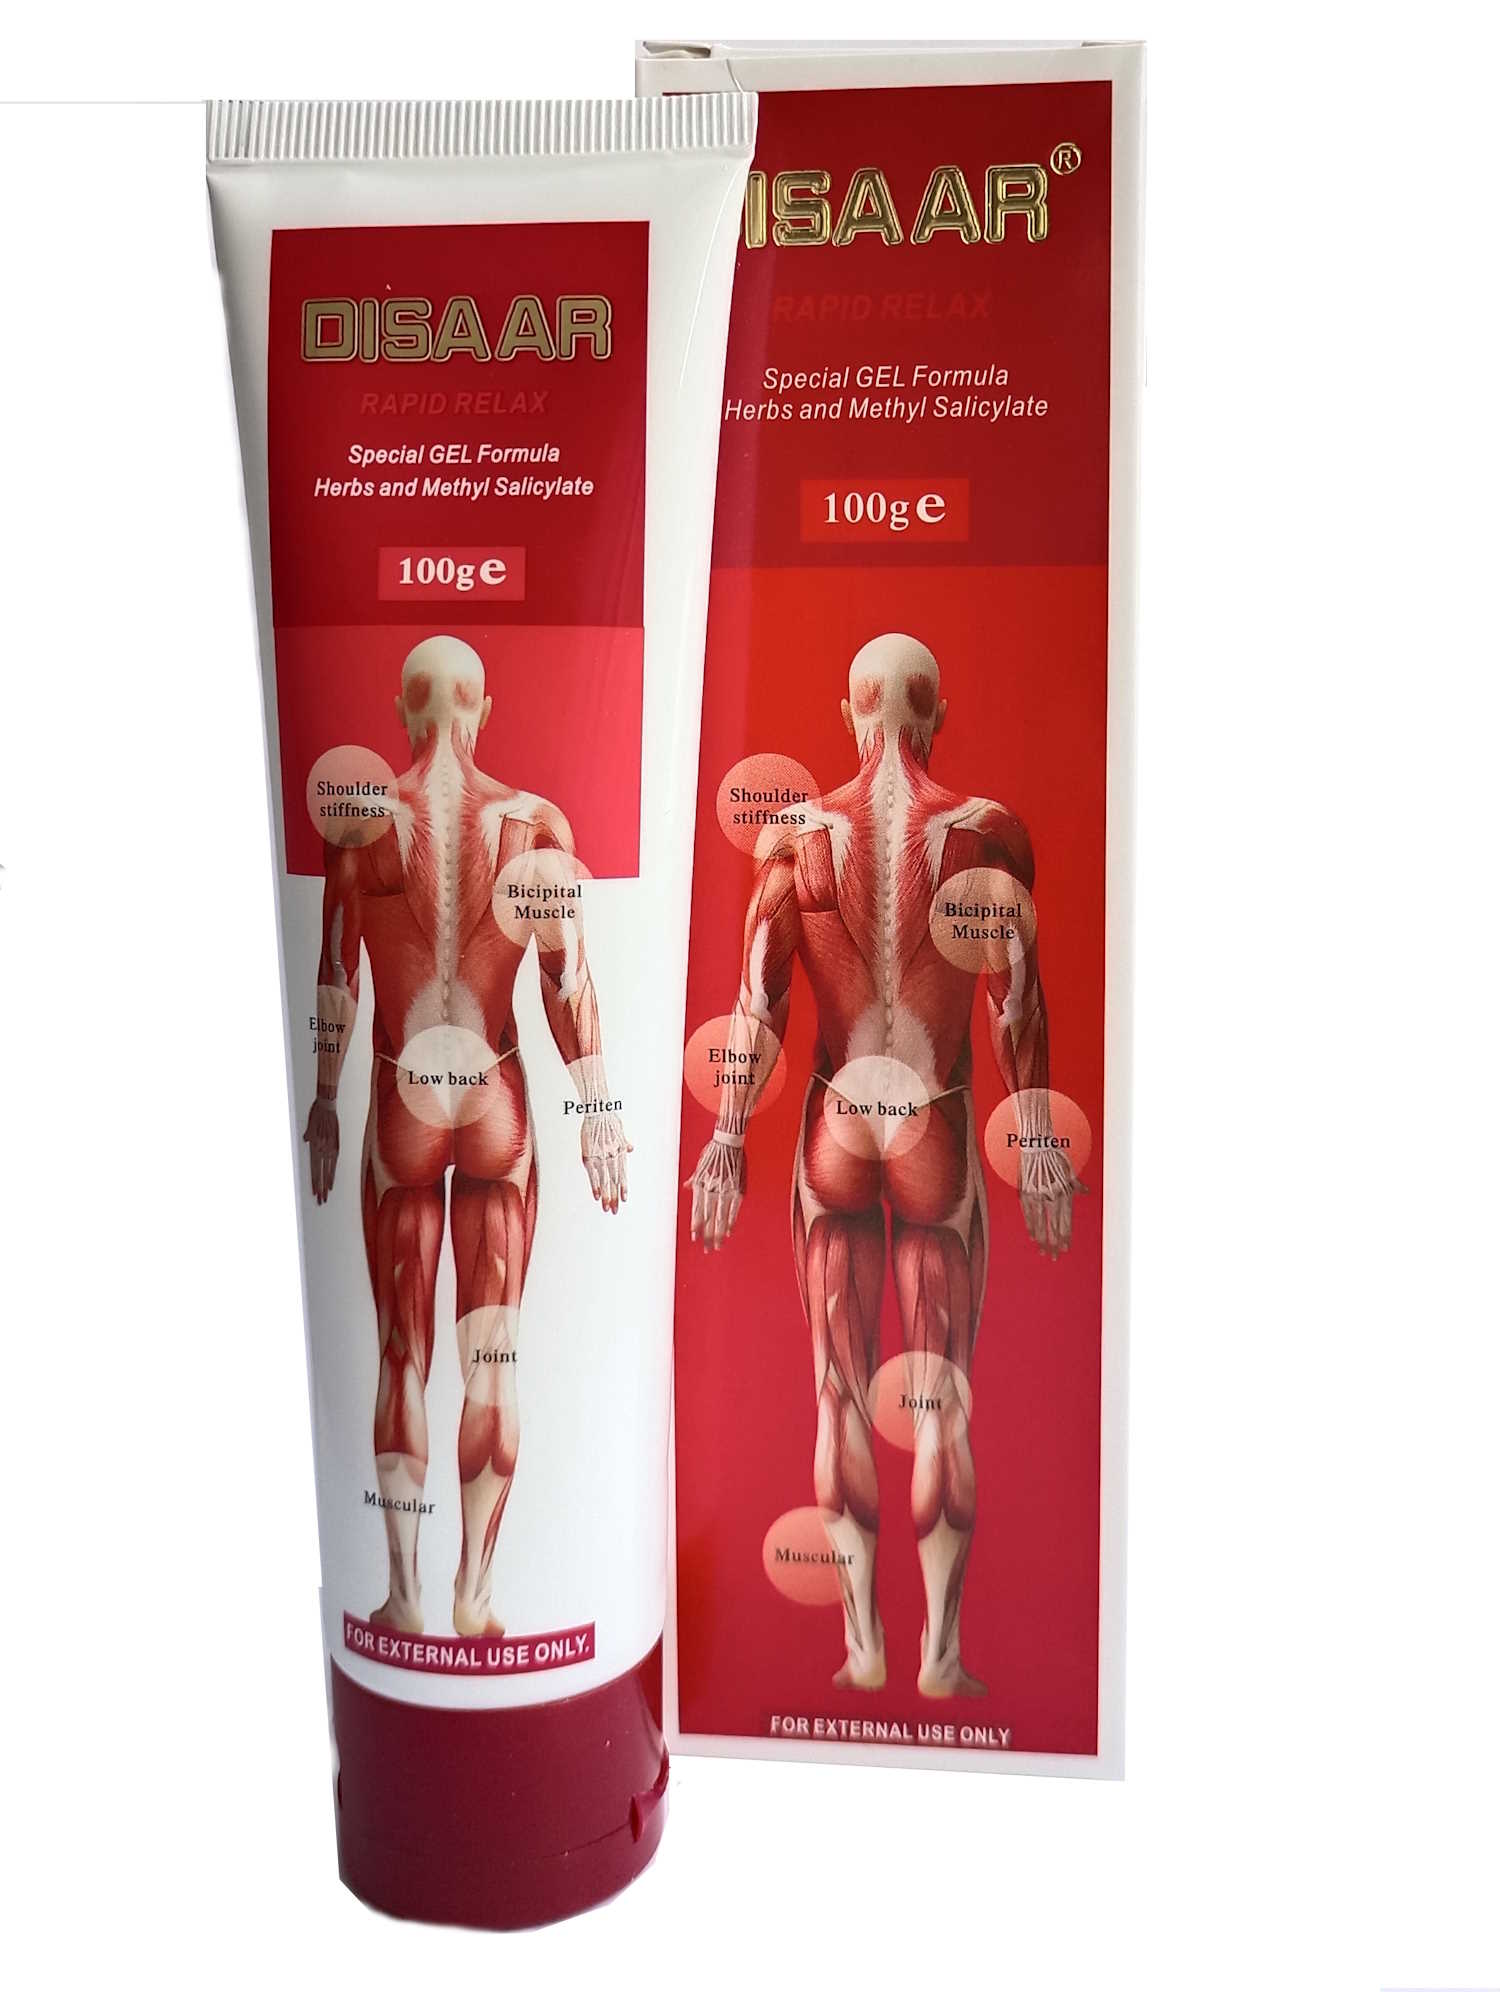 Крем-мазь для суставов DISAAR (охлаждающая), 100 г. 10 г змеиное масло артрит обезболивающая мазь для тела суставов шеи колена медицинский крем для обезболивания суставов и колен